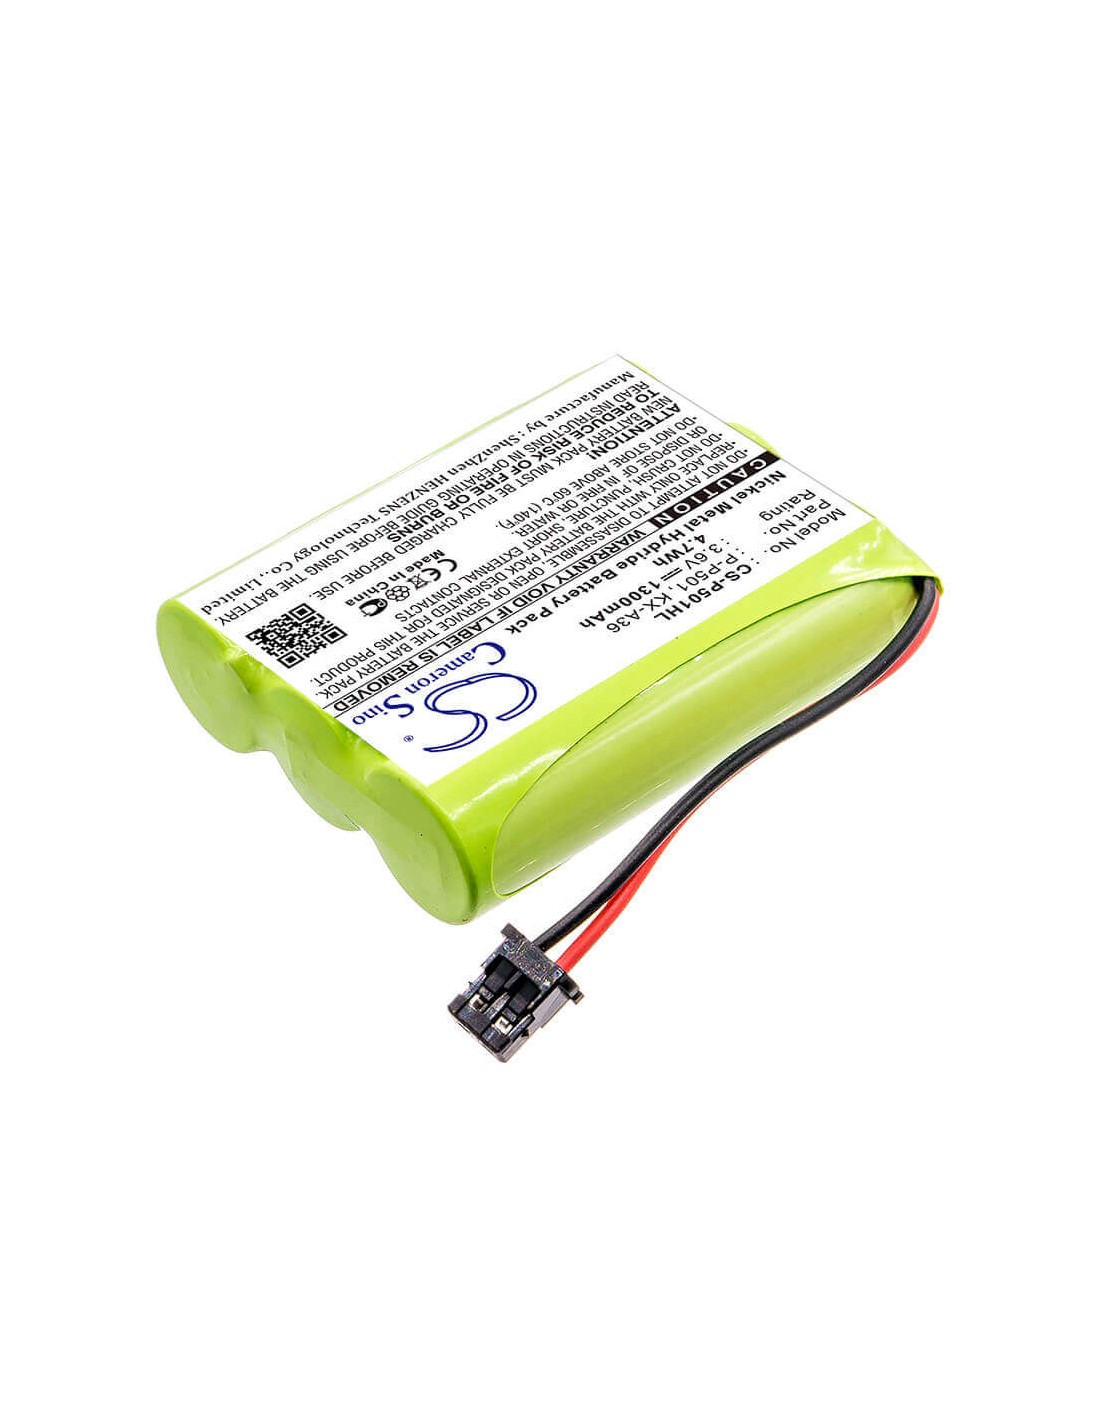 Battery for Sony, Bbty0623001, Bpt18, Bp-t18, Bp-t24, 3.6V, 1300mAh - 4.68Wh